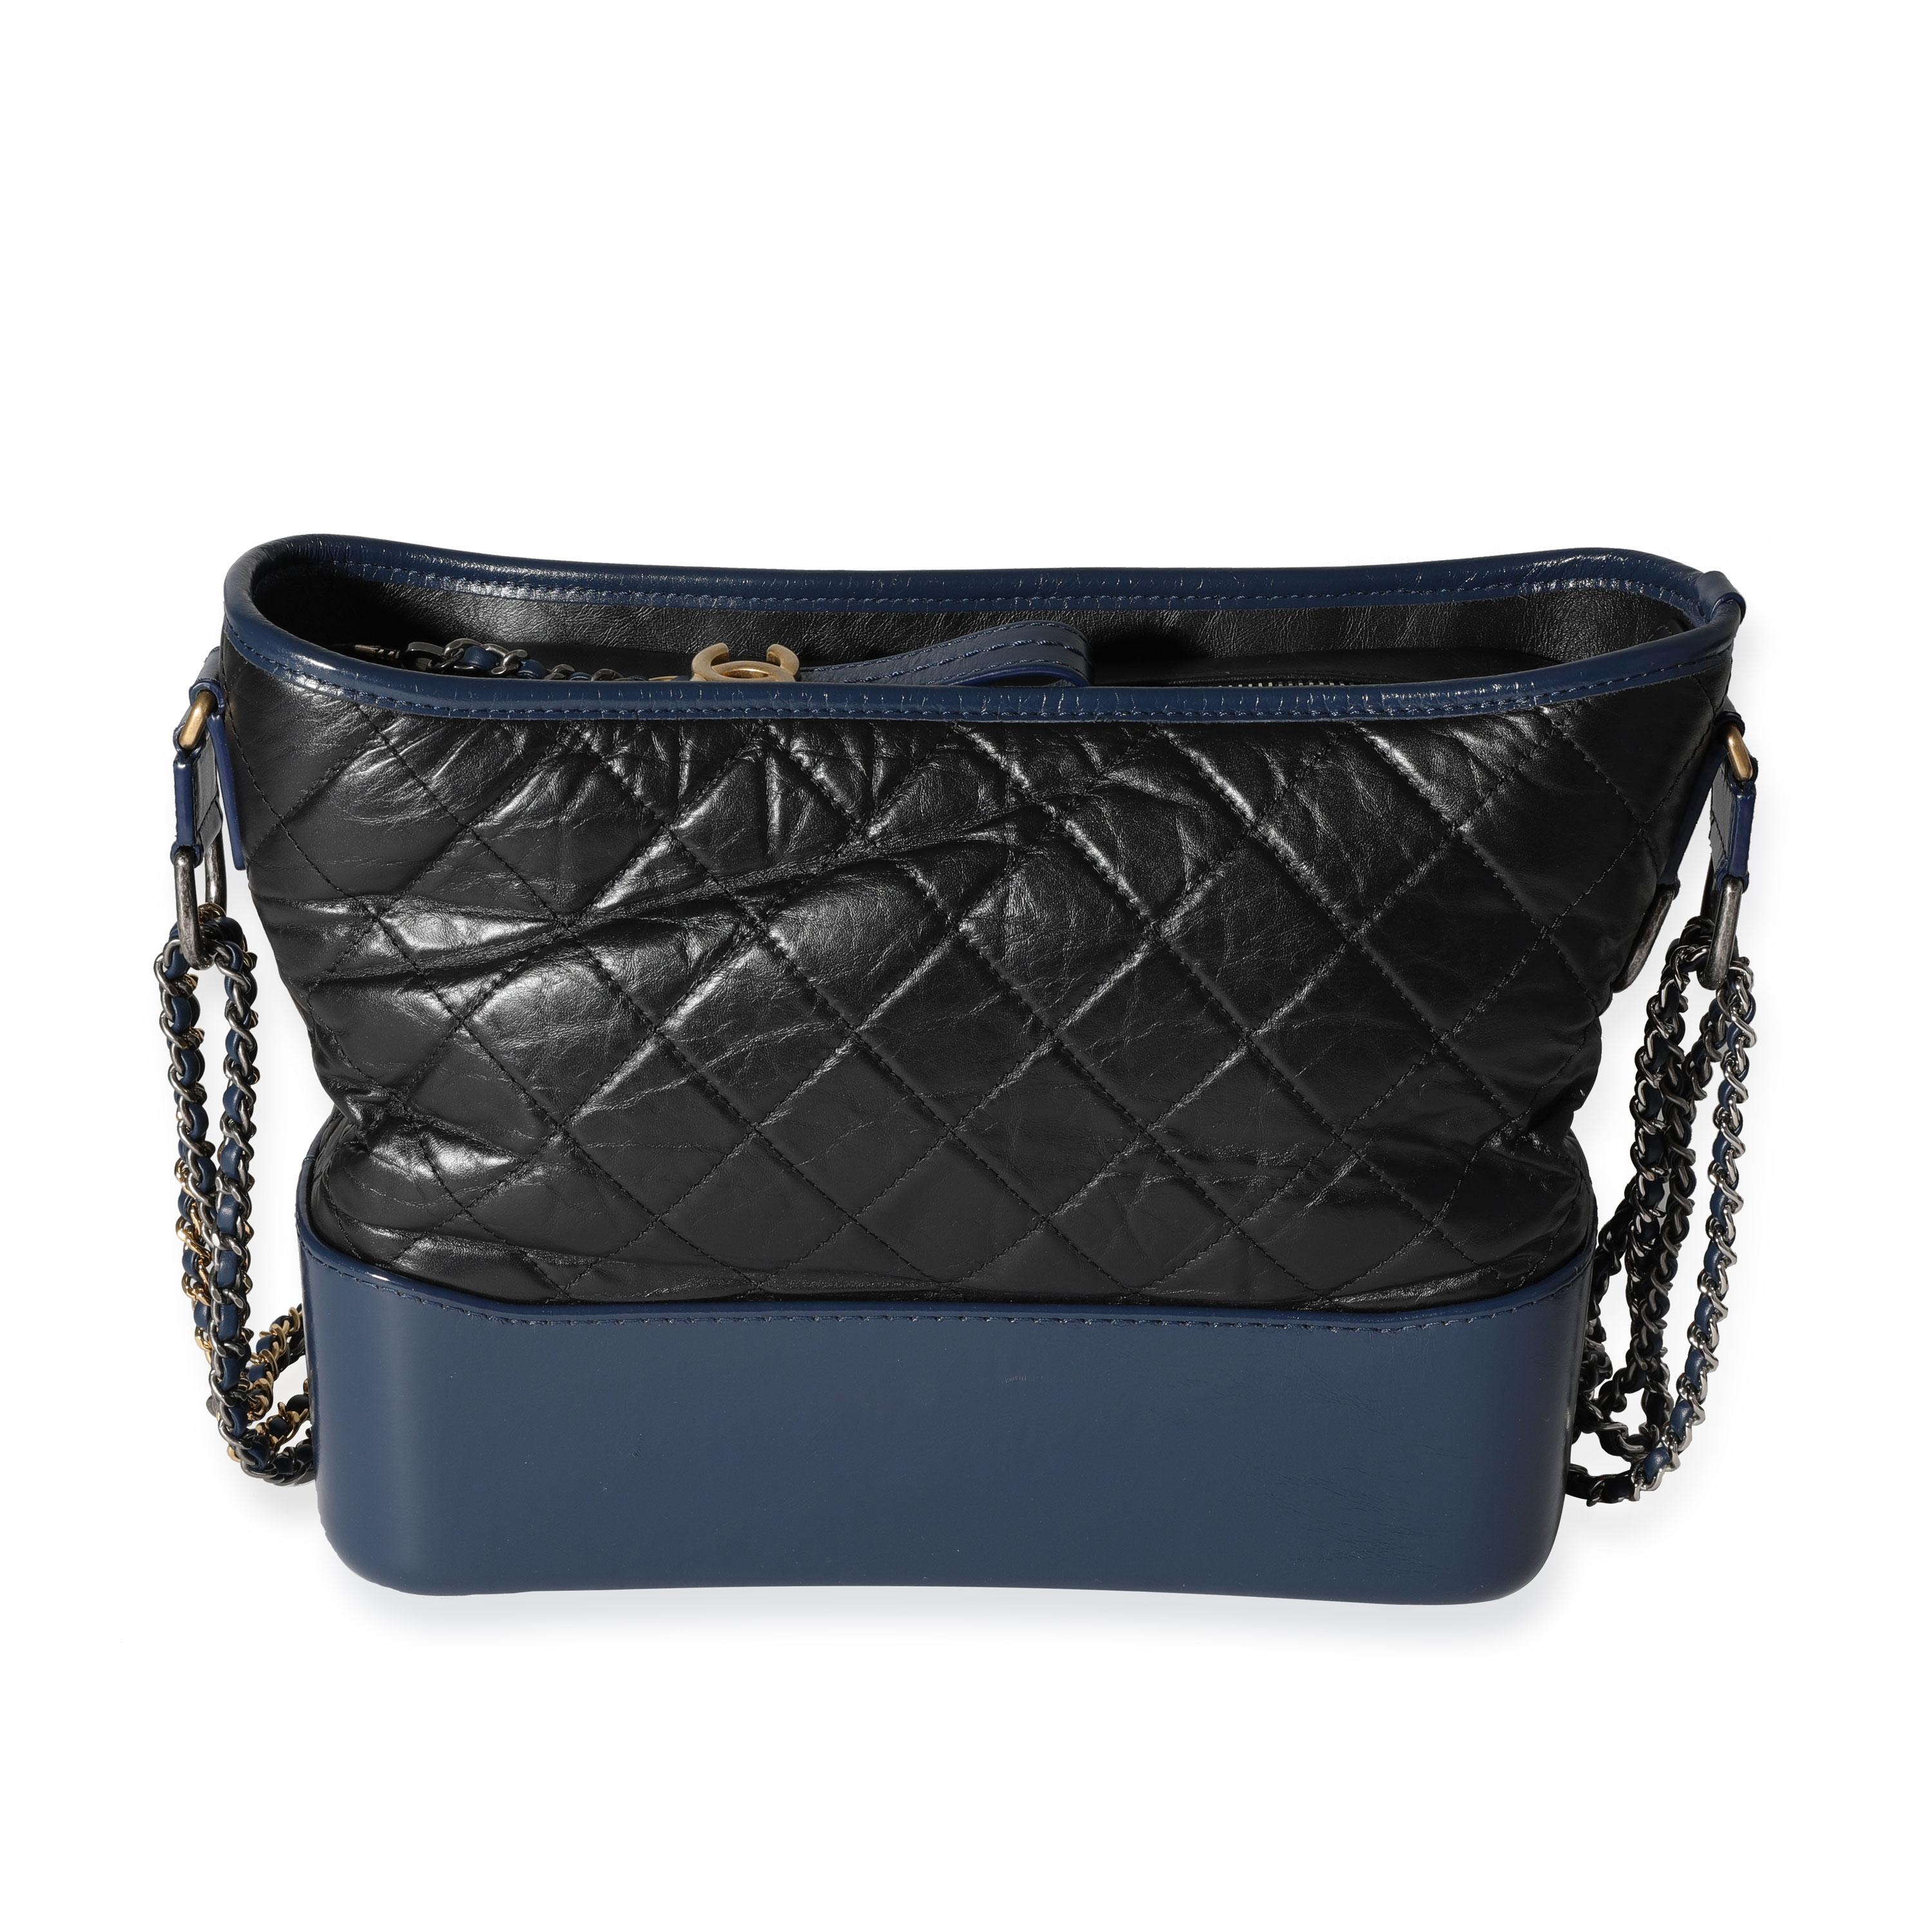 Noir Chanel - Grand sac hobo Gabrielle en cuir de veau vieilli matelassé noir et bleu en vente